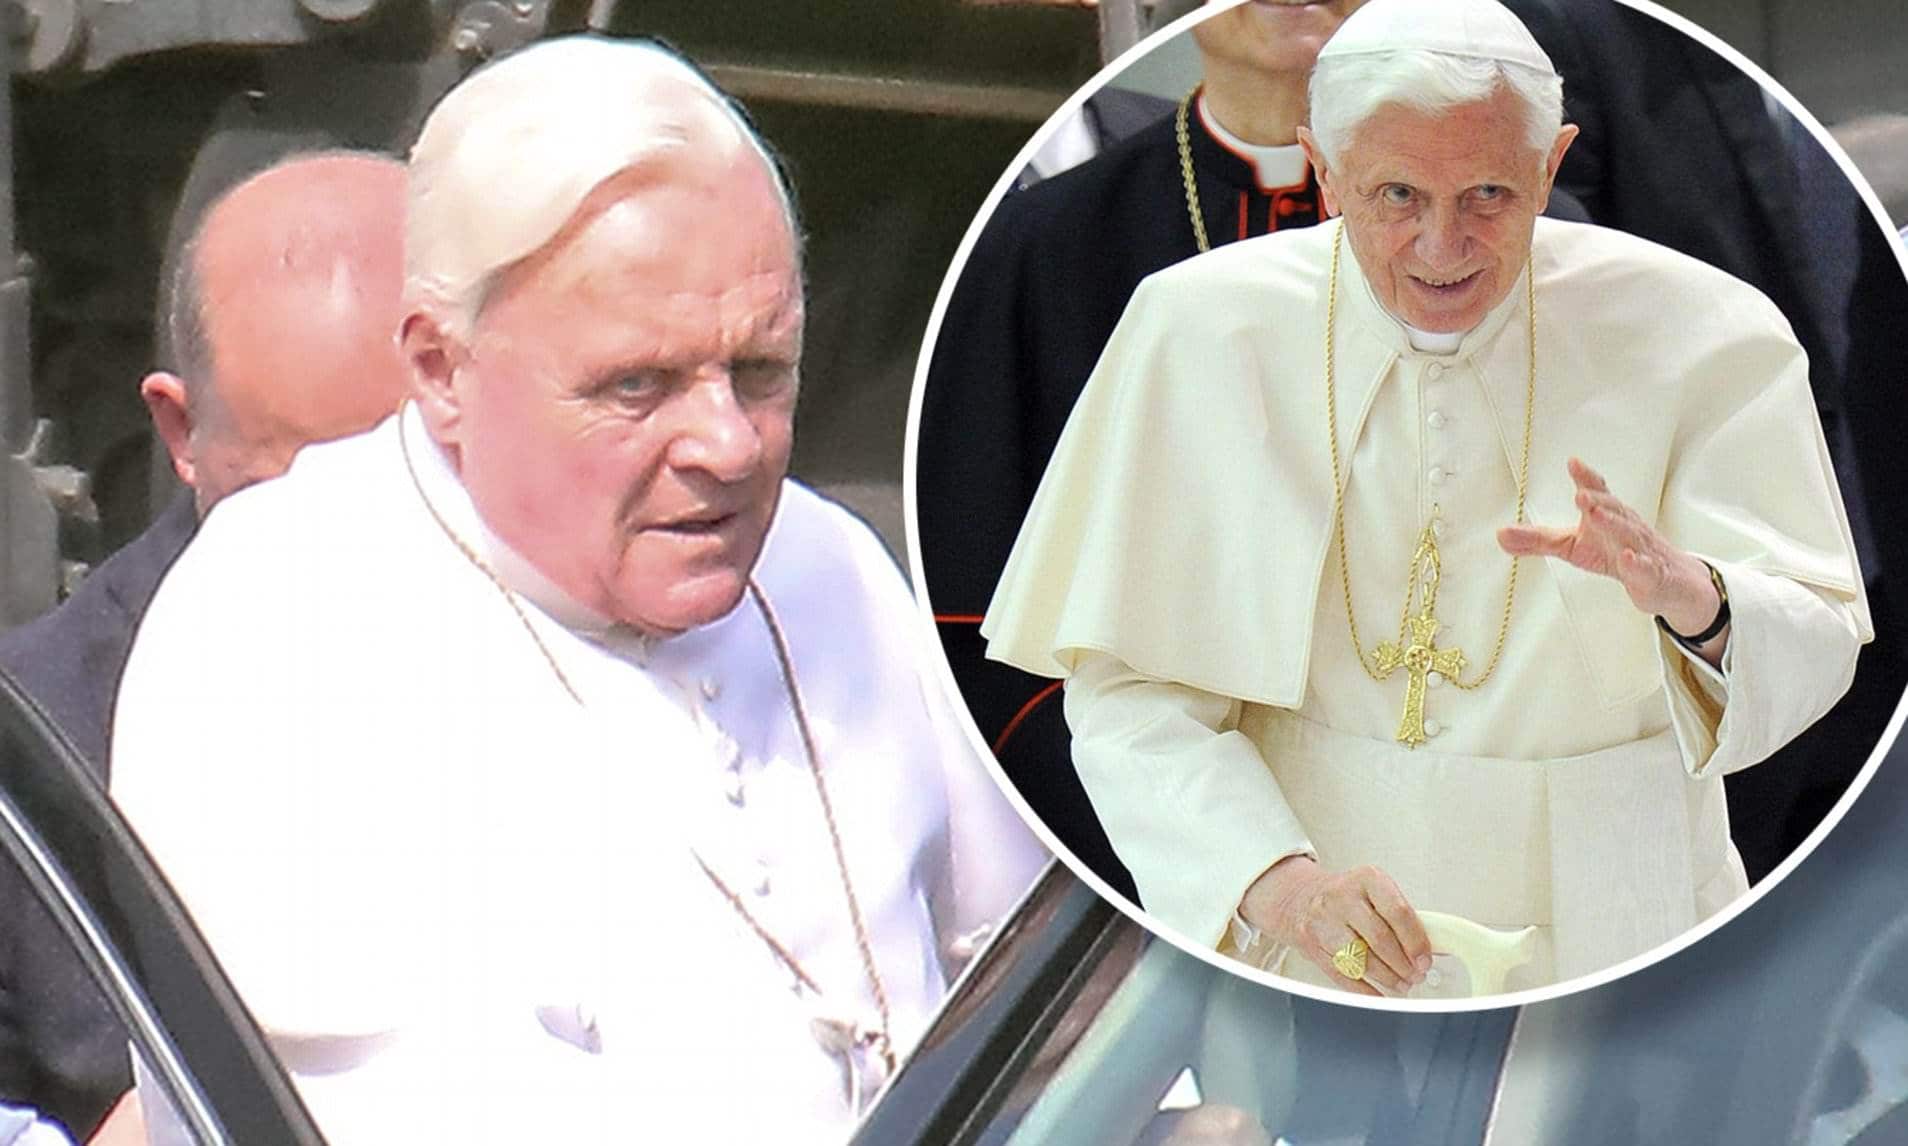 imagen de comparación del papa Benedicto y el actor